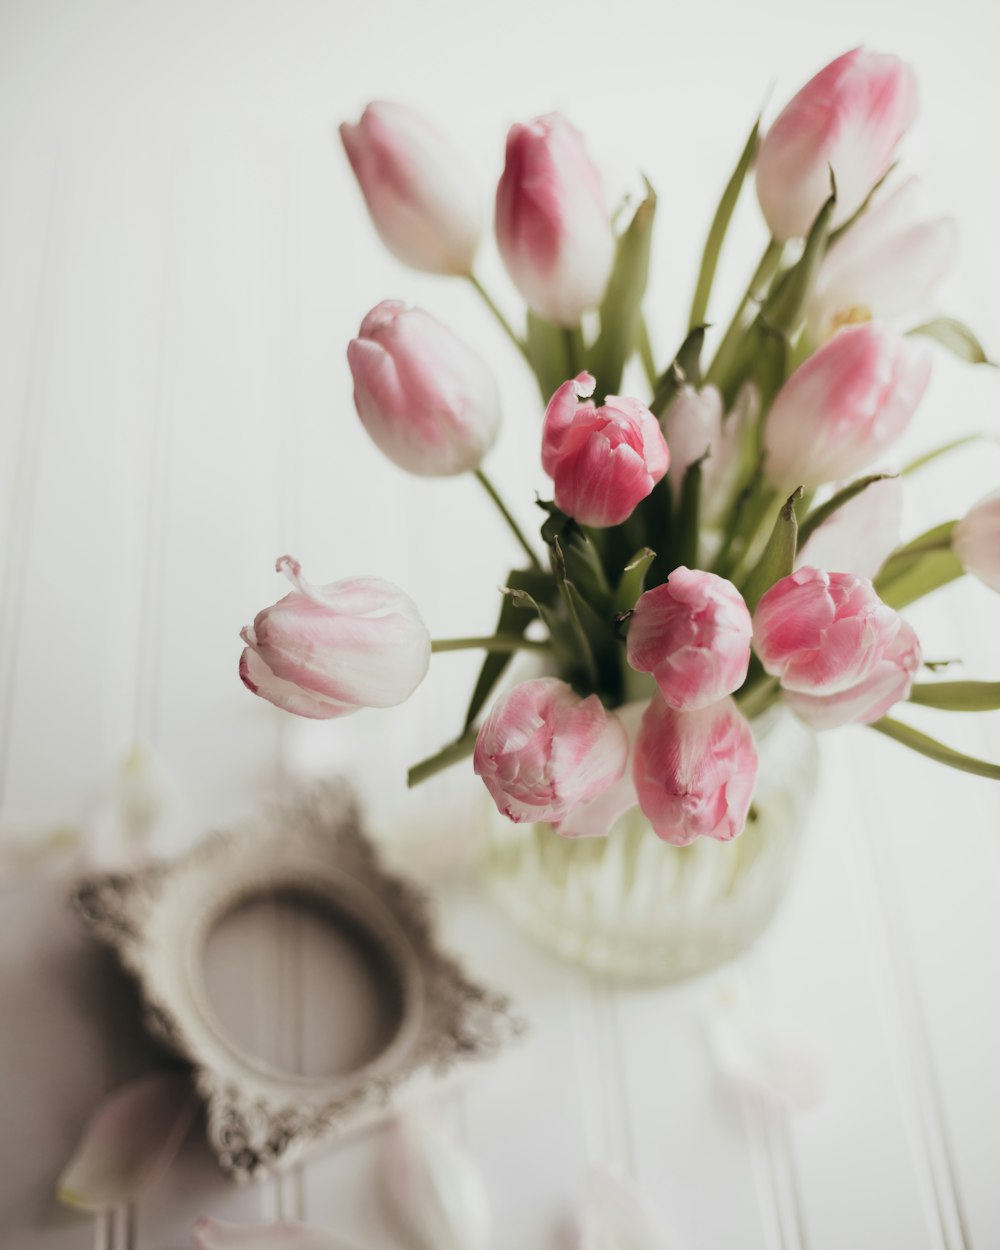 테이블 위에 놓인 분홍색 튤립으로 가득 찬 꽃병